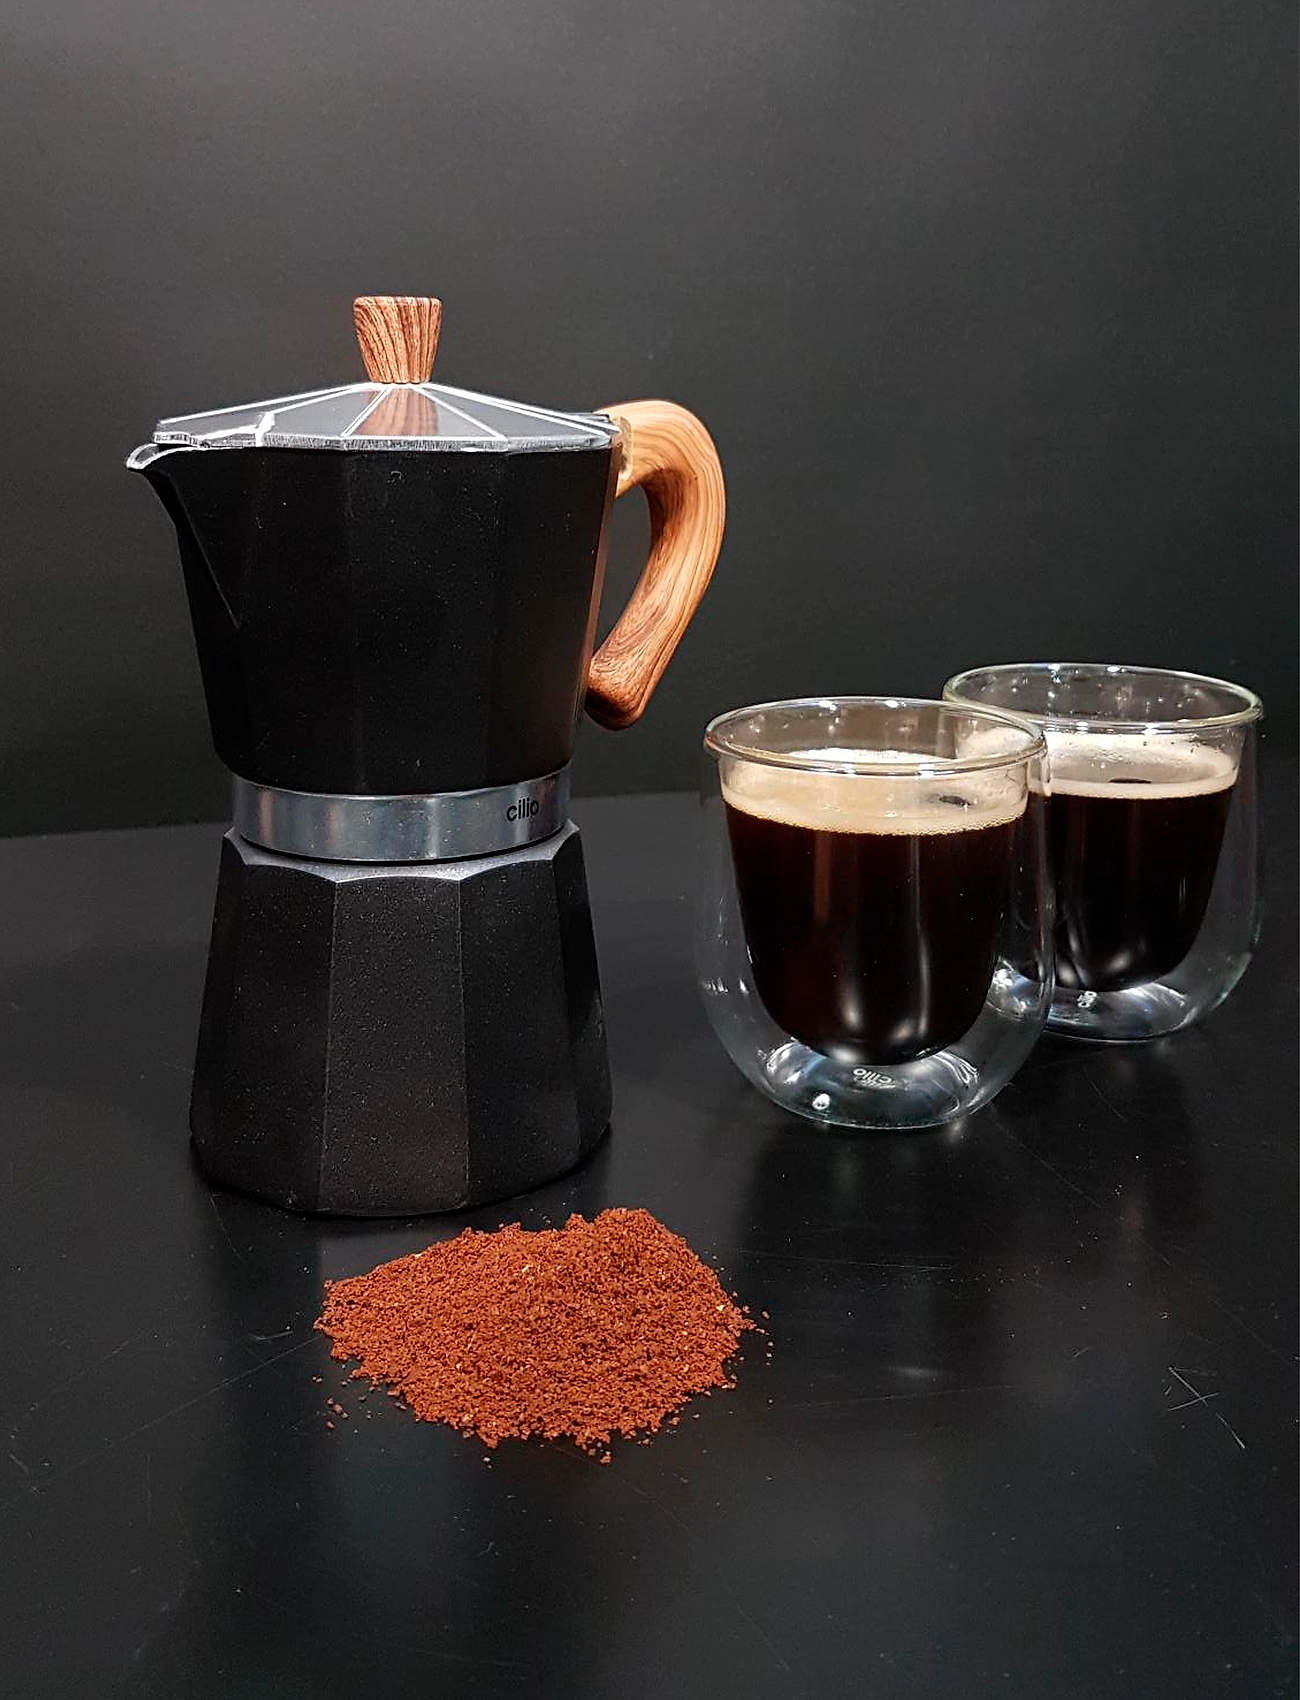 cilio - Espresso maker CLASSICO NATURA 3 cups - moka-töpfe - black - 1